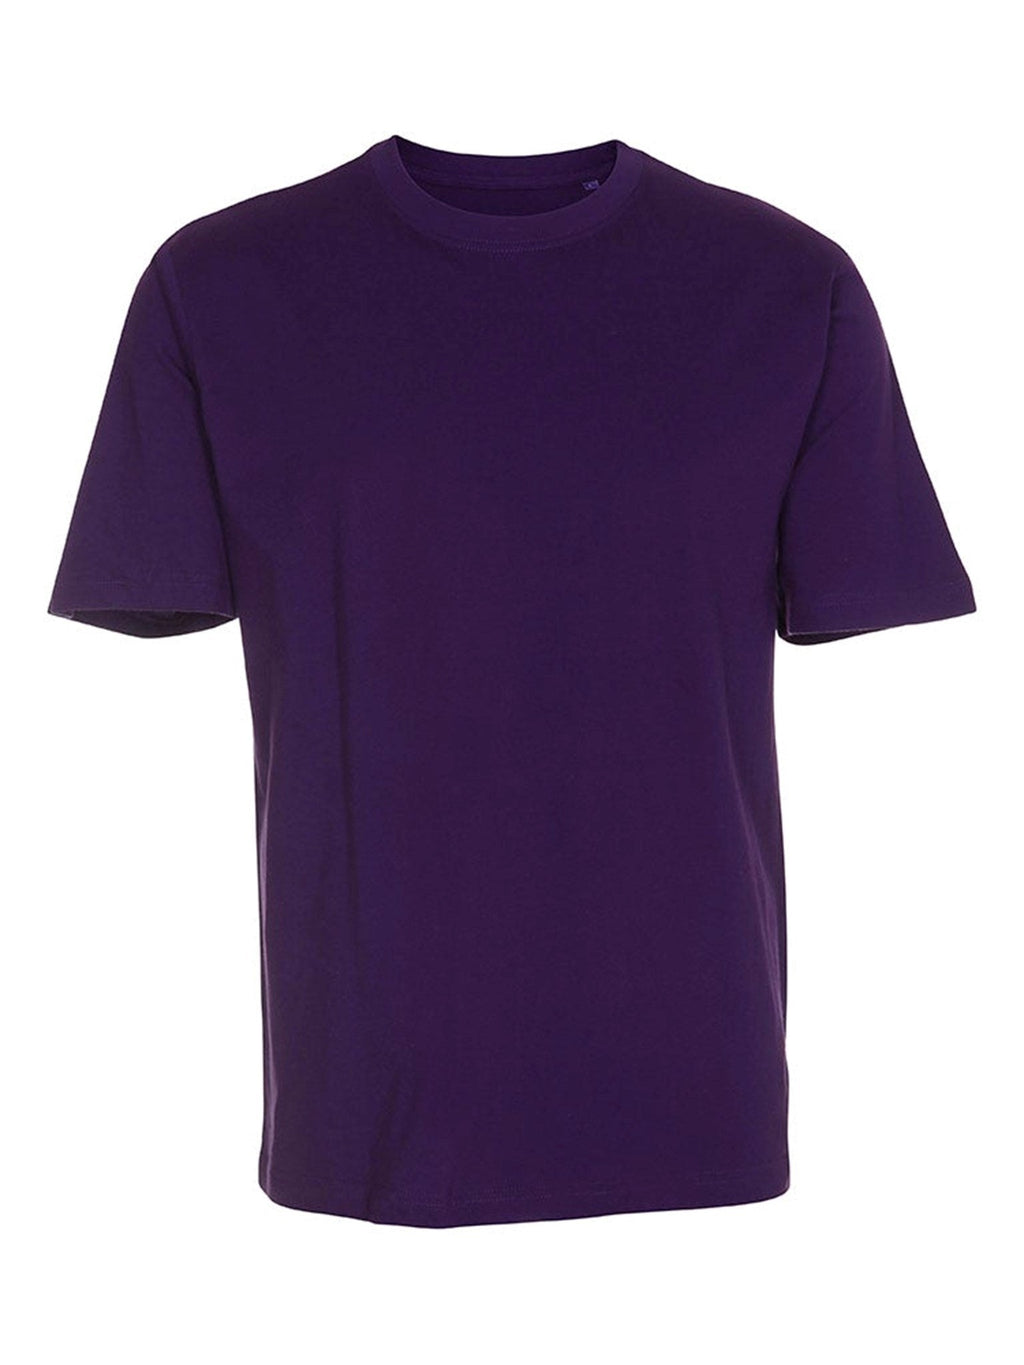 超大T恤 - 紫罗兰色